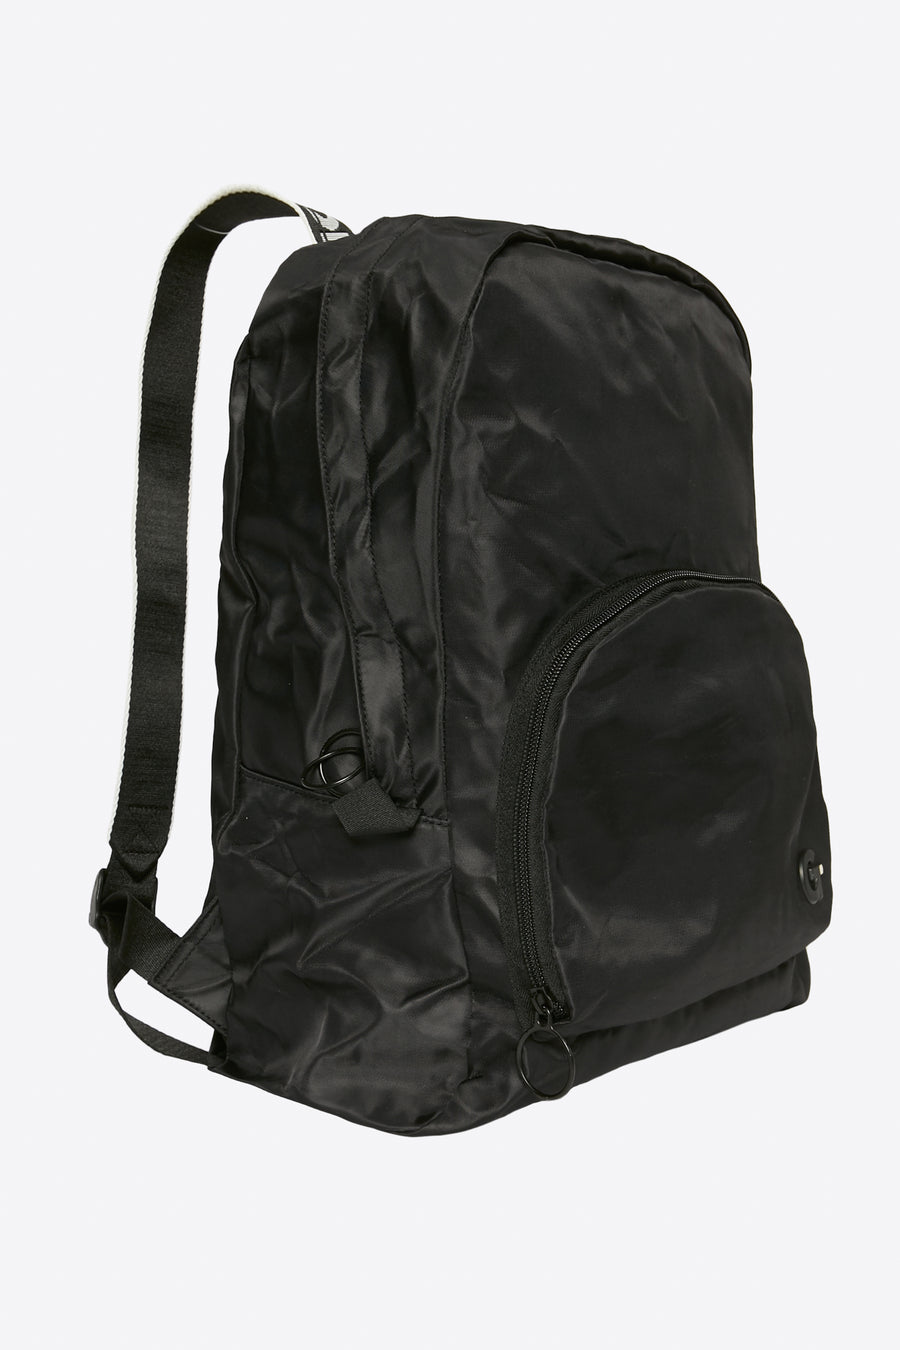 Sydney Backpack - Black/White